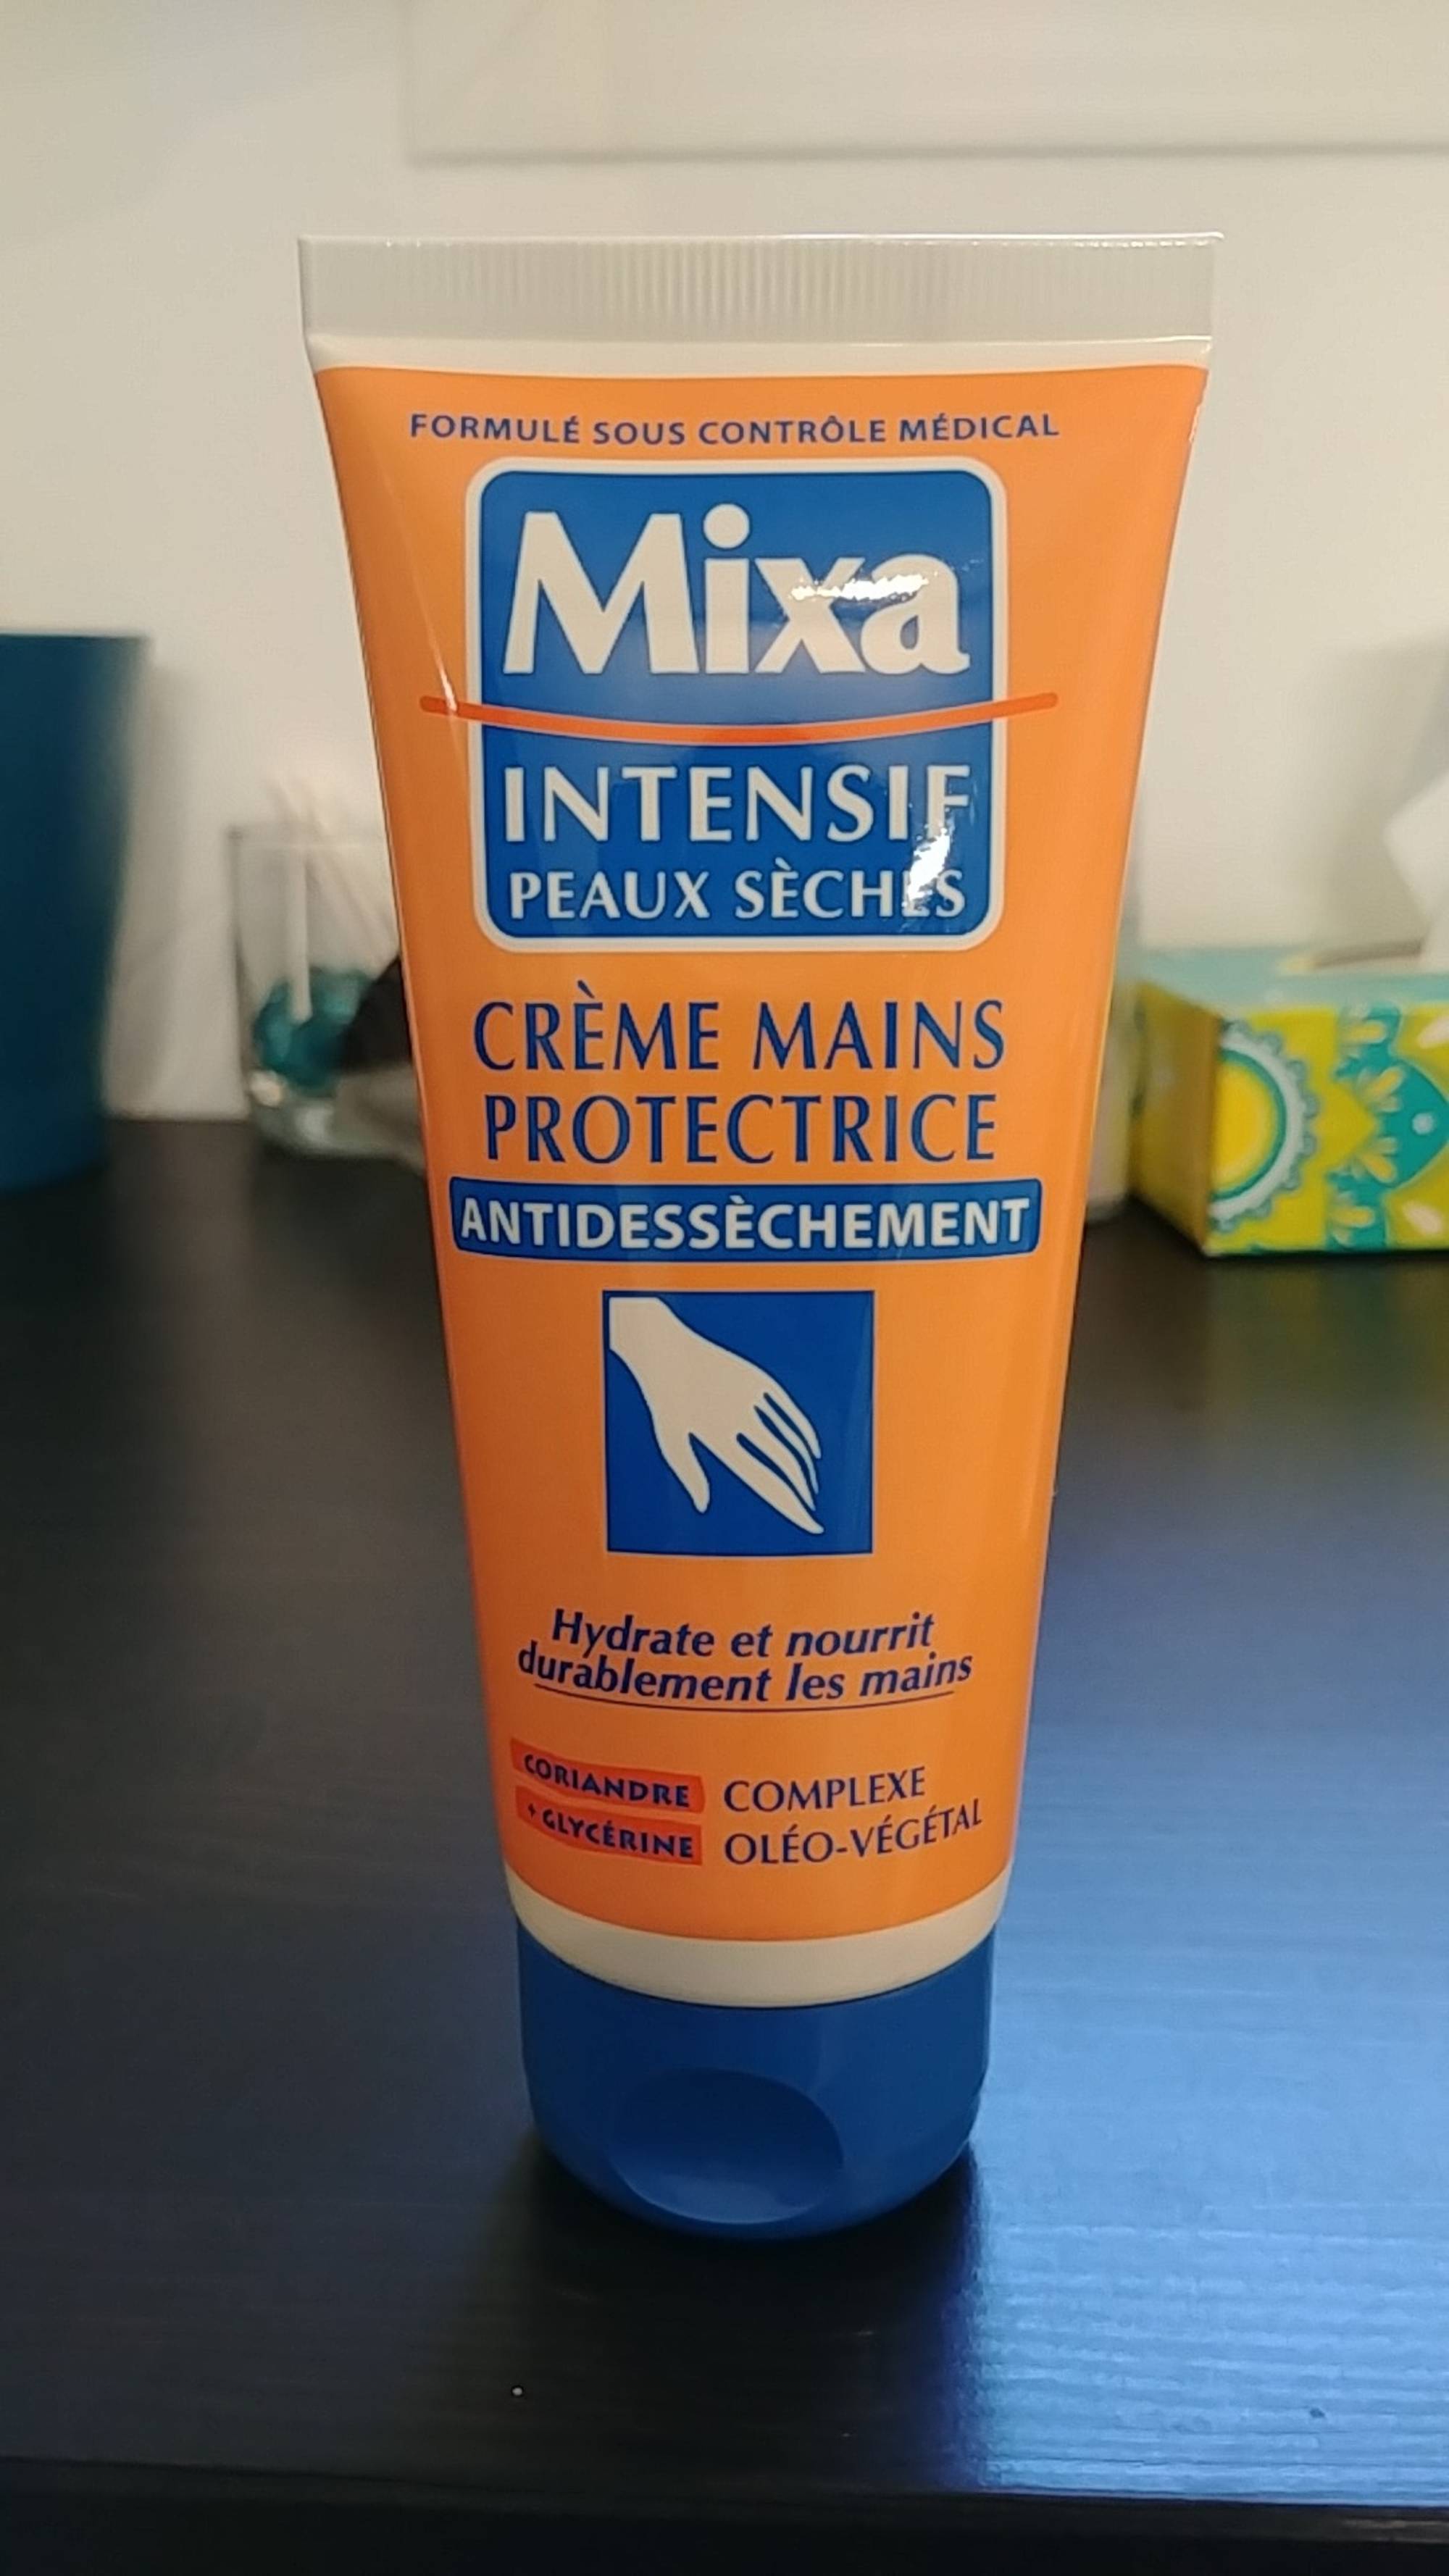 Composition MIXA Intensif peaux sèches - Crème mains protectrice